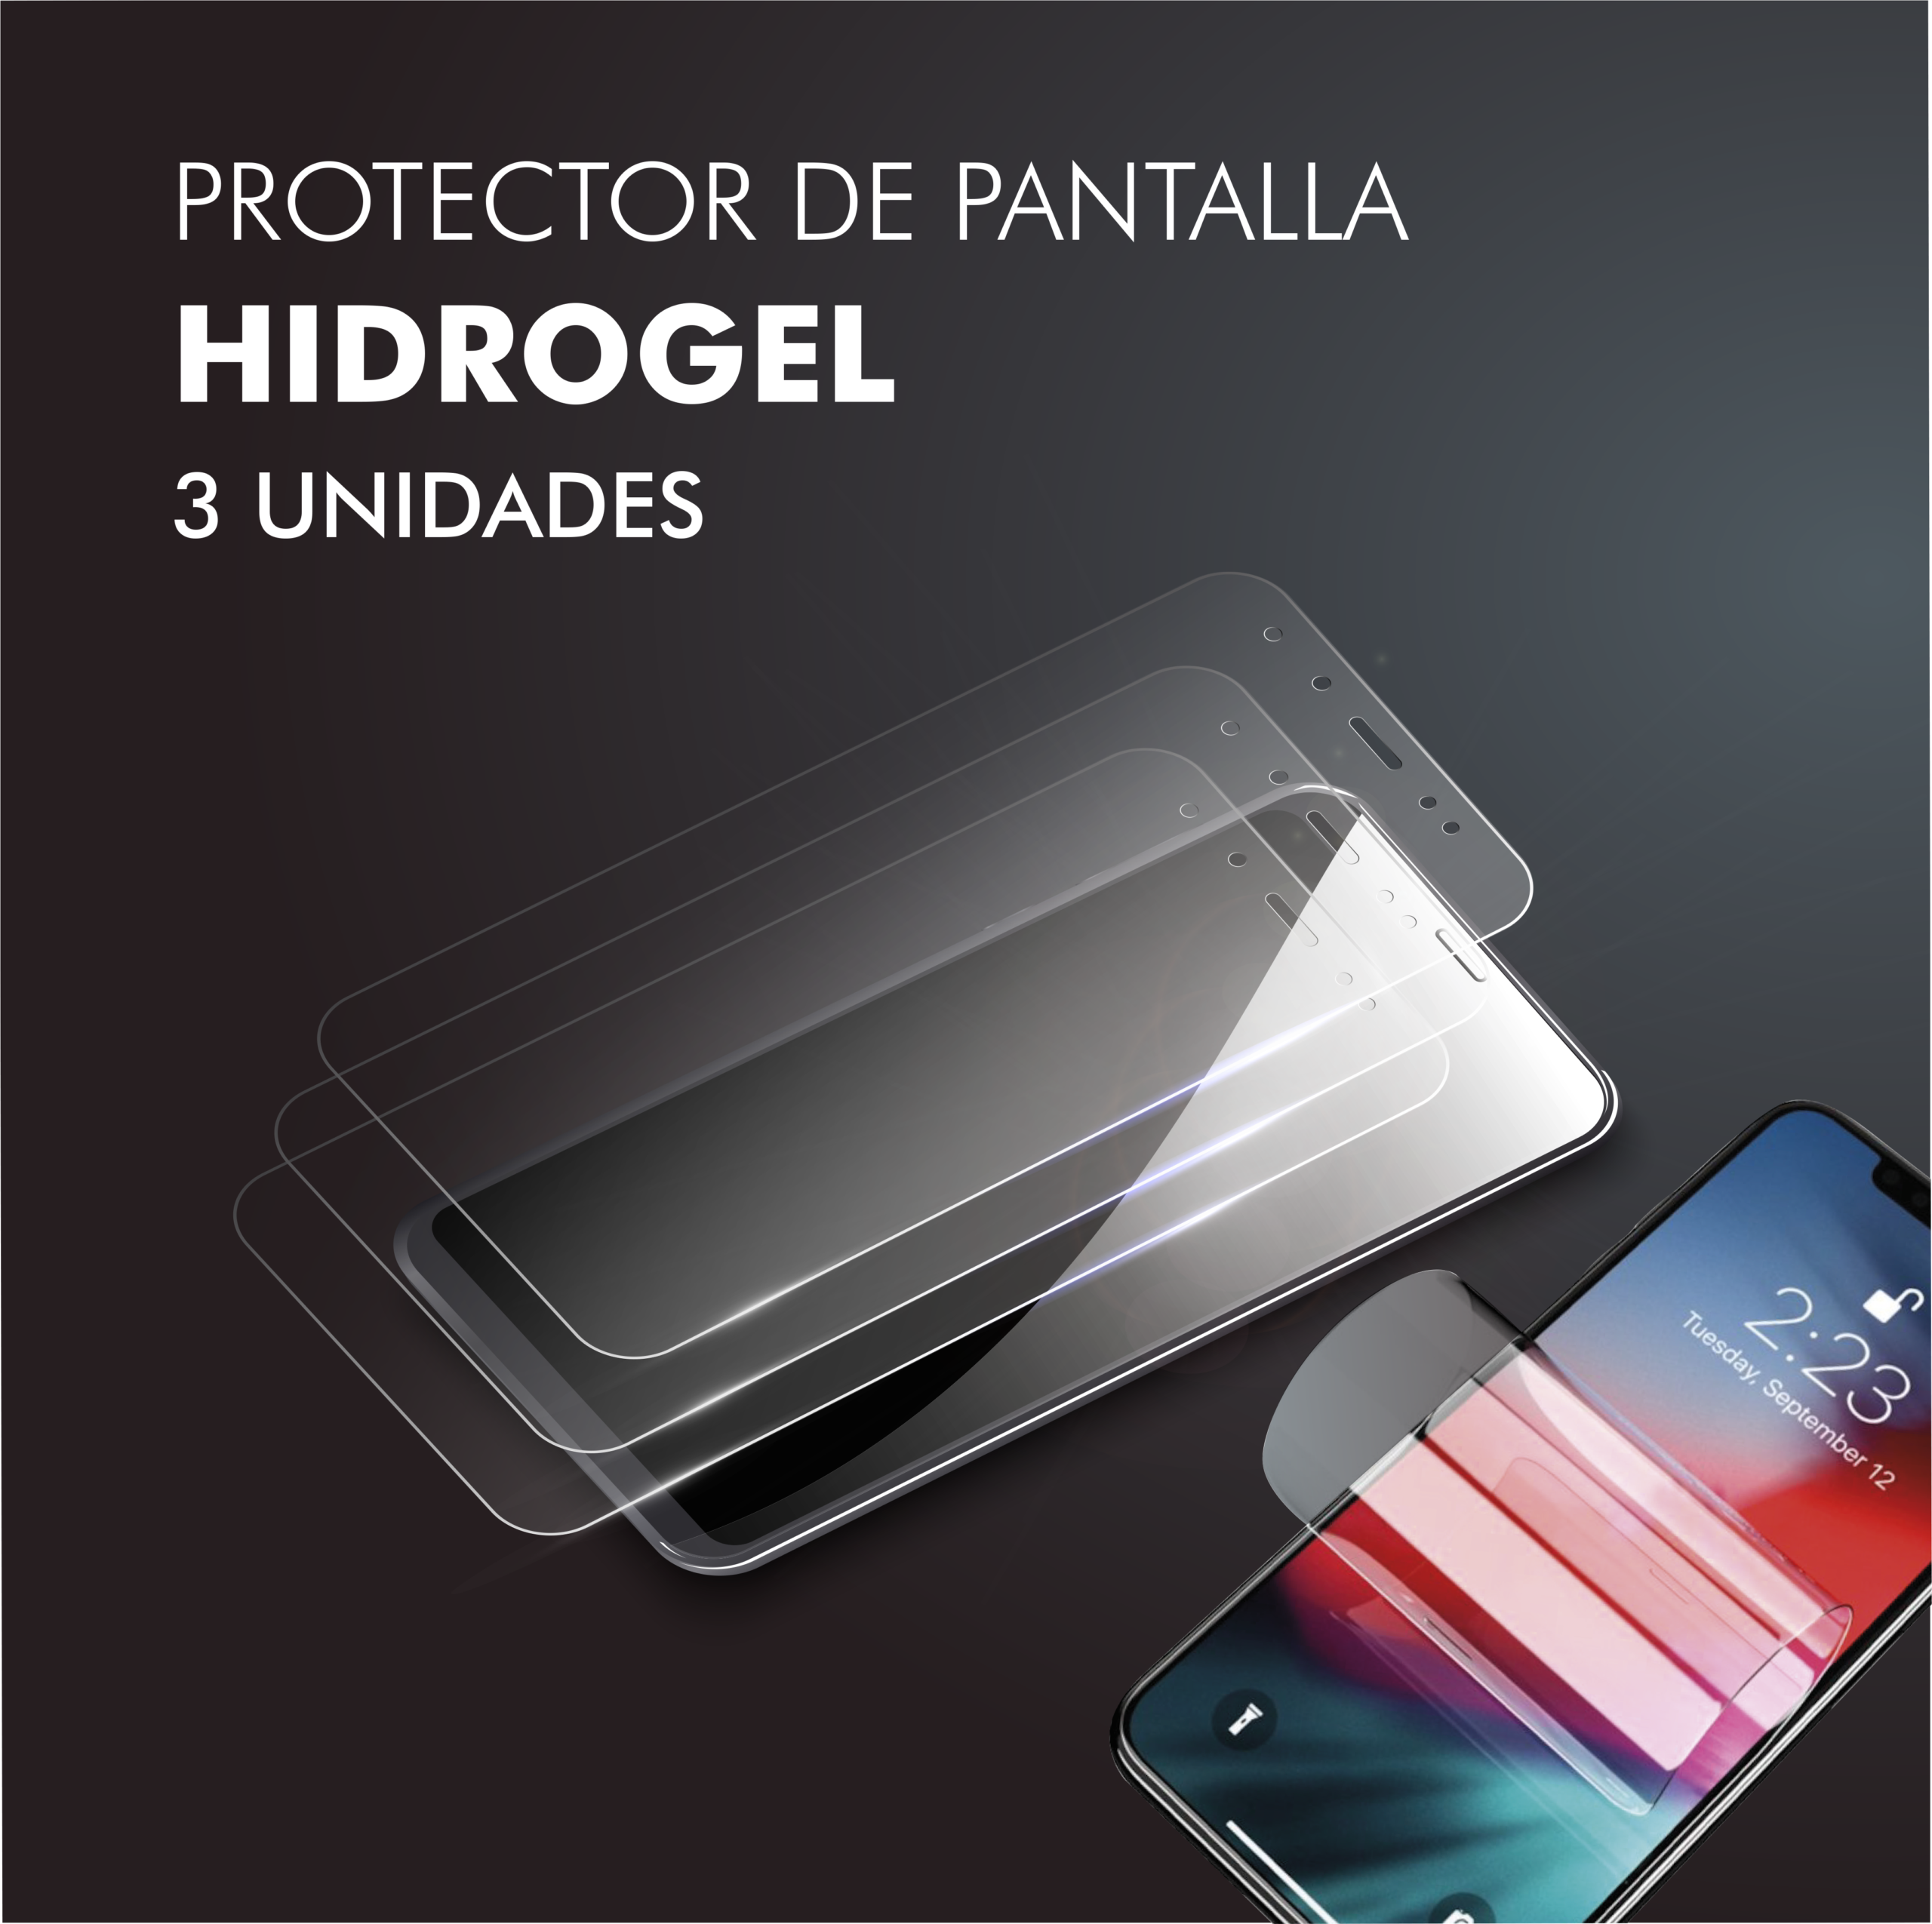 Protector de Pantalla Hidrogel – 3 unidades - Personalaizer